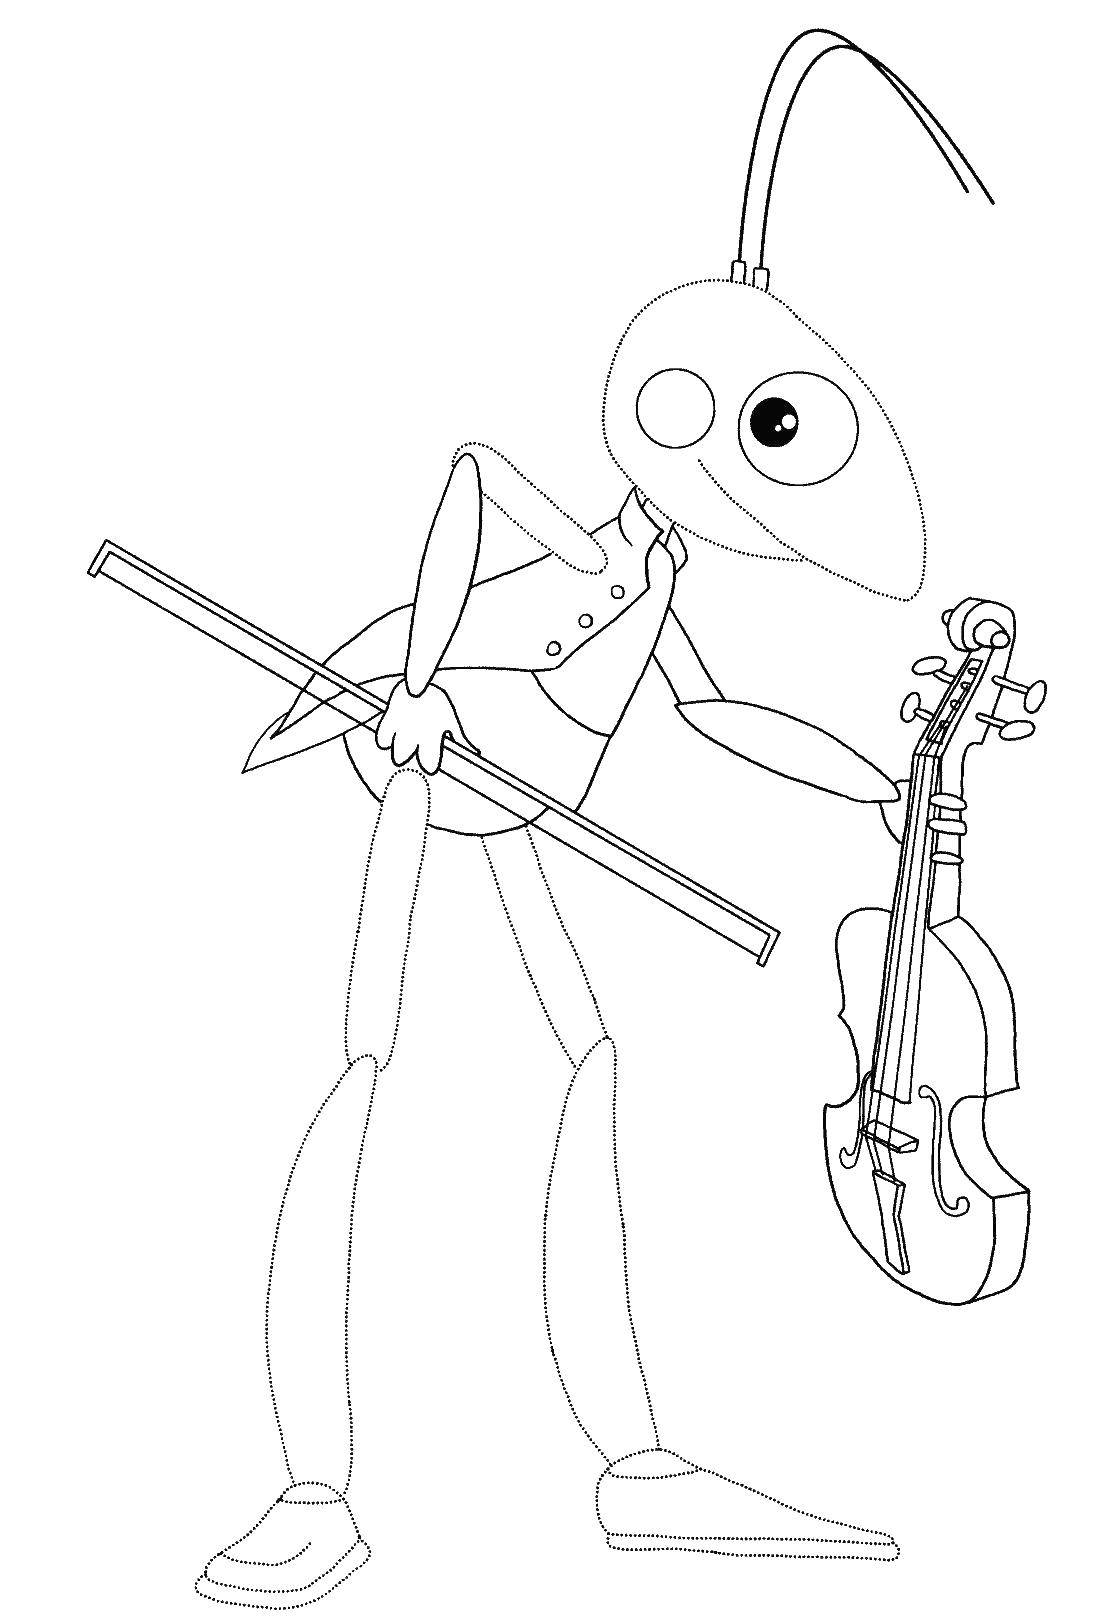   Кузнечик играет на скрипке